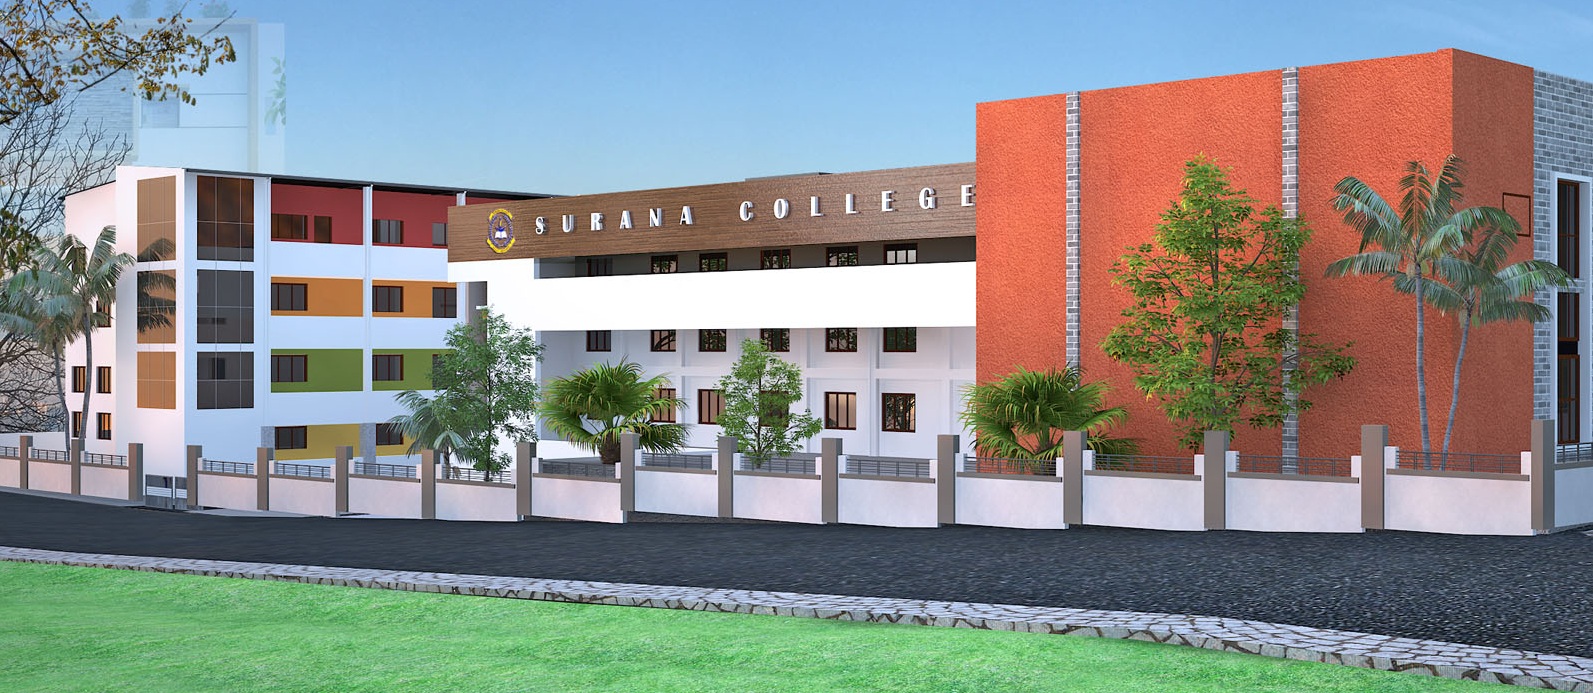 Surana College - Peenya, Bengaluru Image